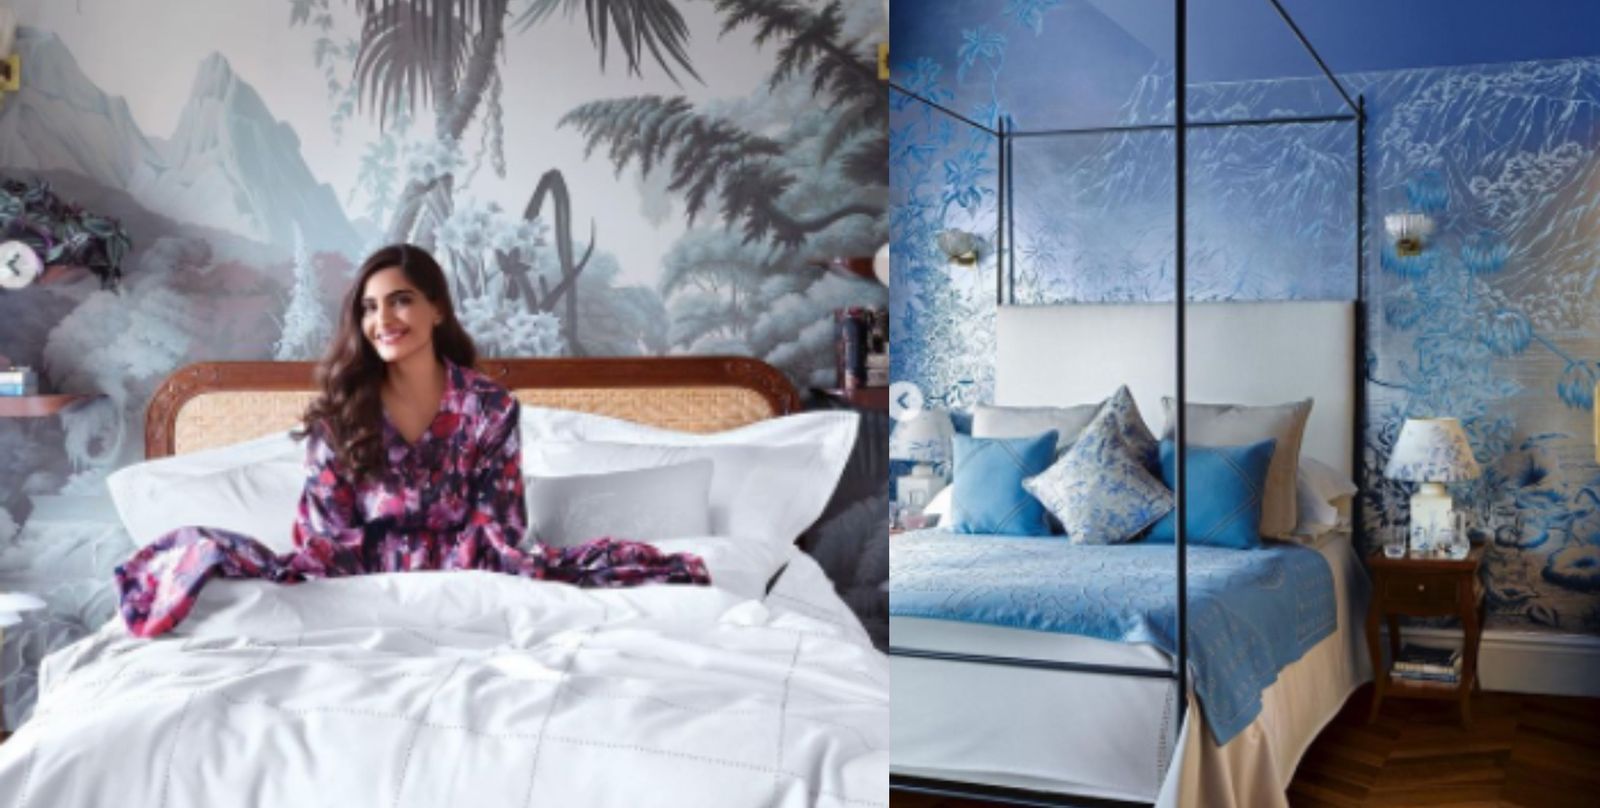 सोनम कपूर ने शेयर की अपने लंदन वाले घर की तस्वीरें, ऐसा दिखता है बेडरूम-बाथरूम एरिया